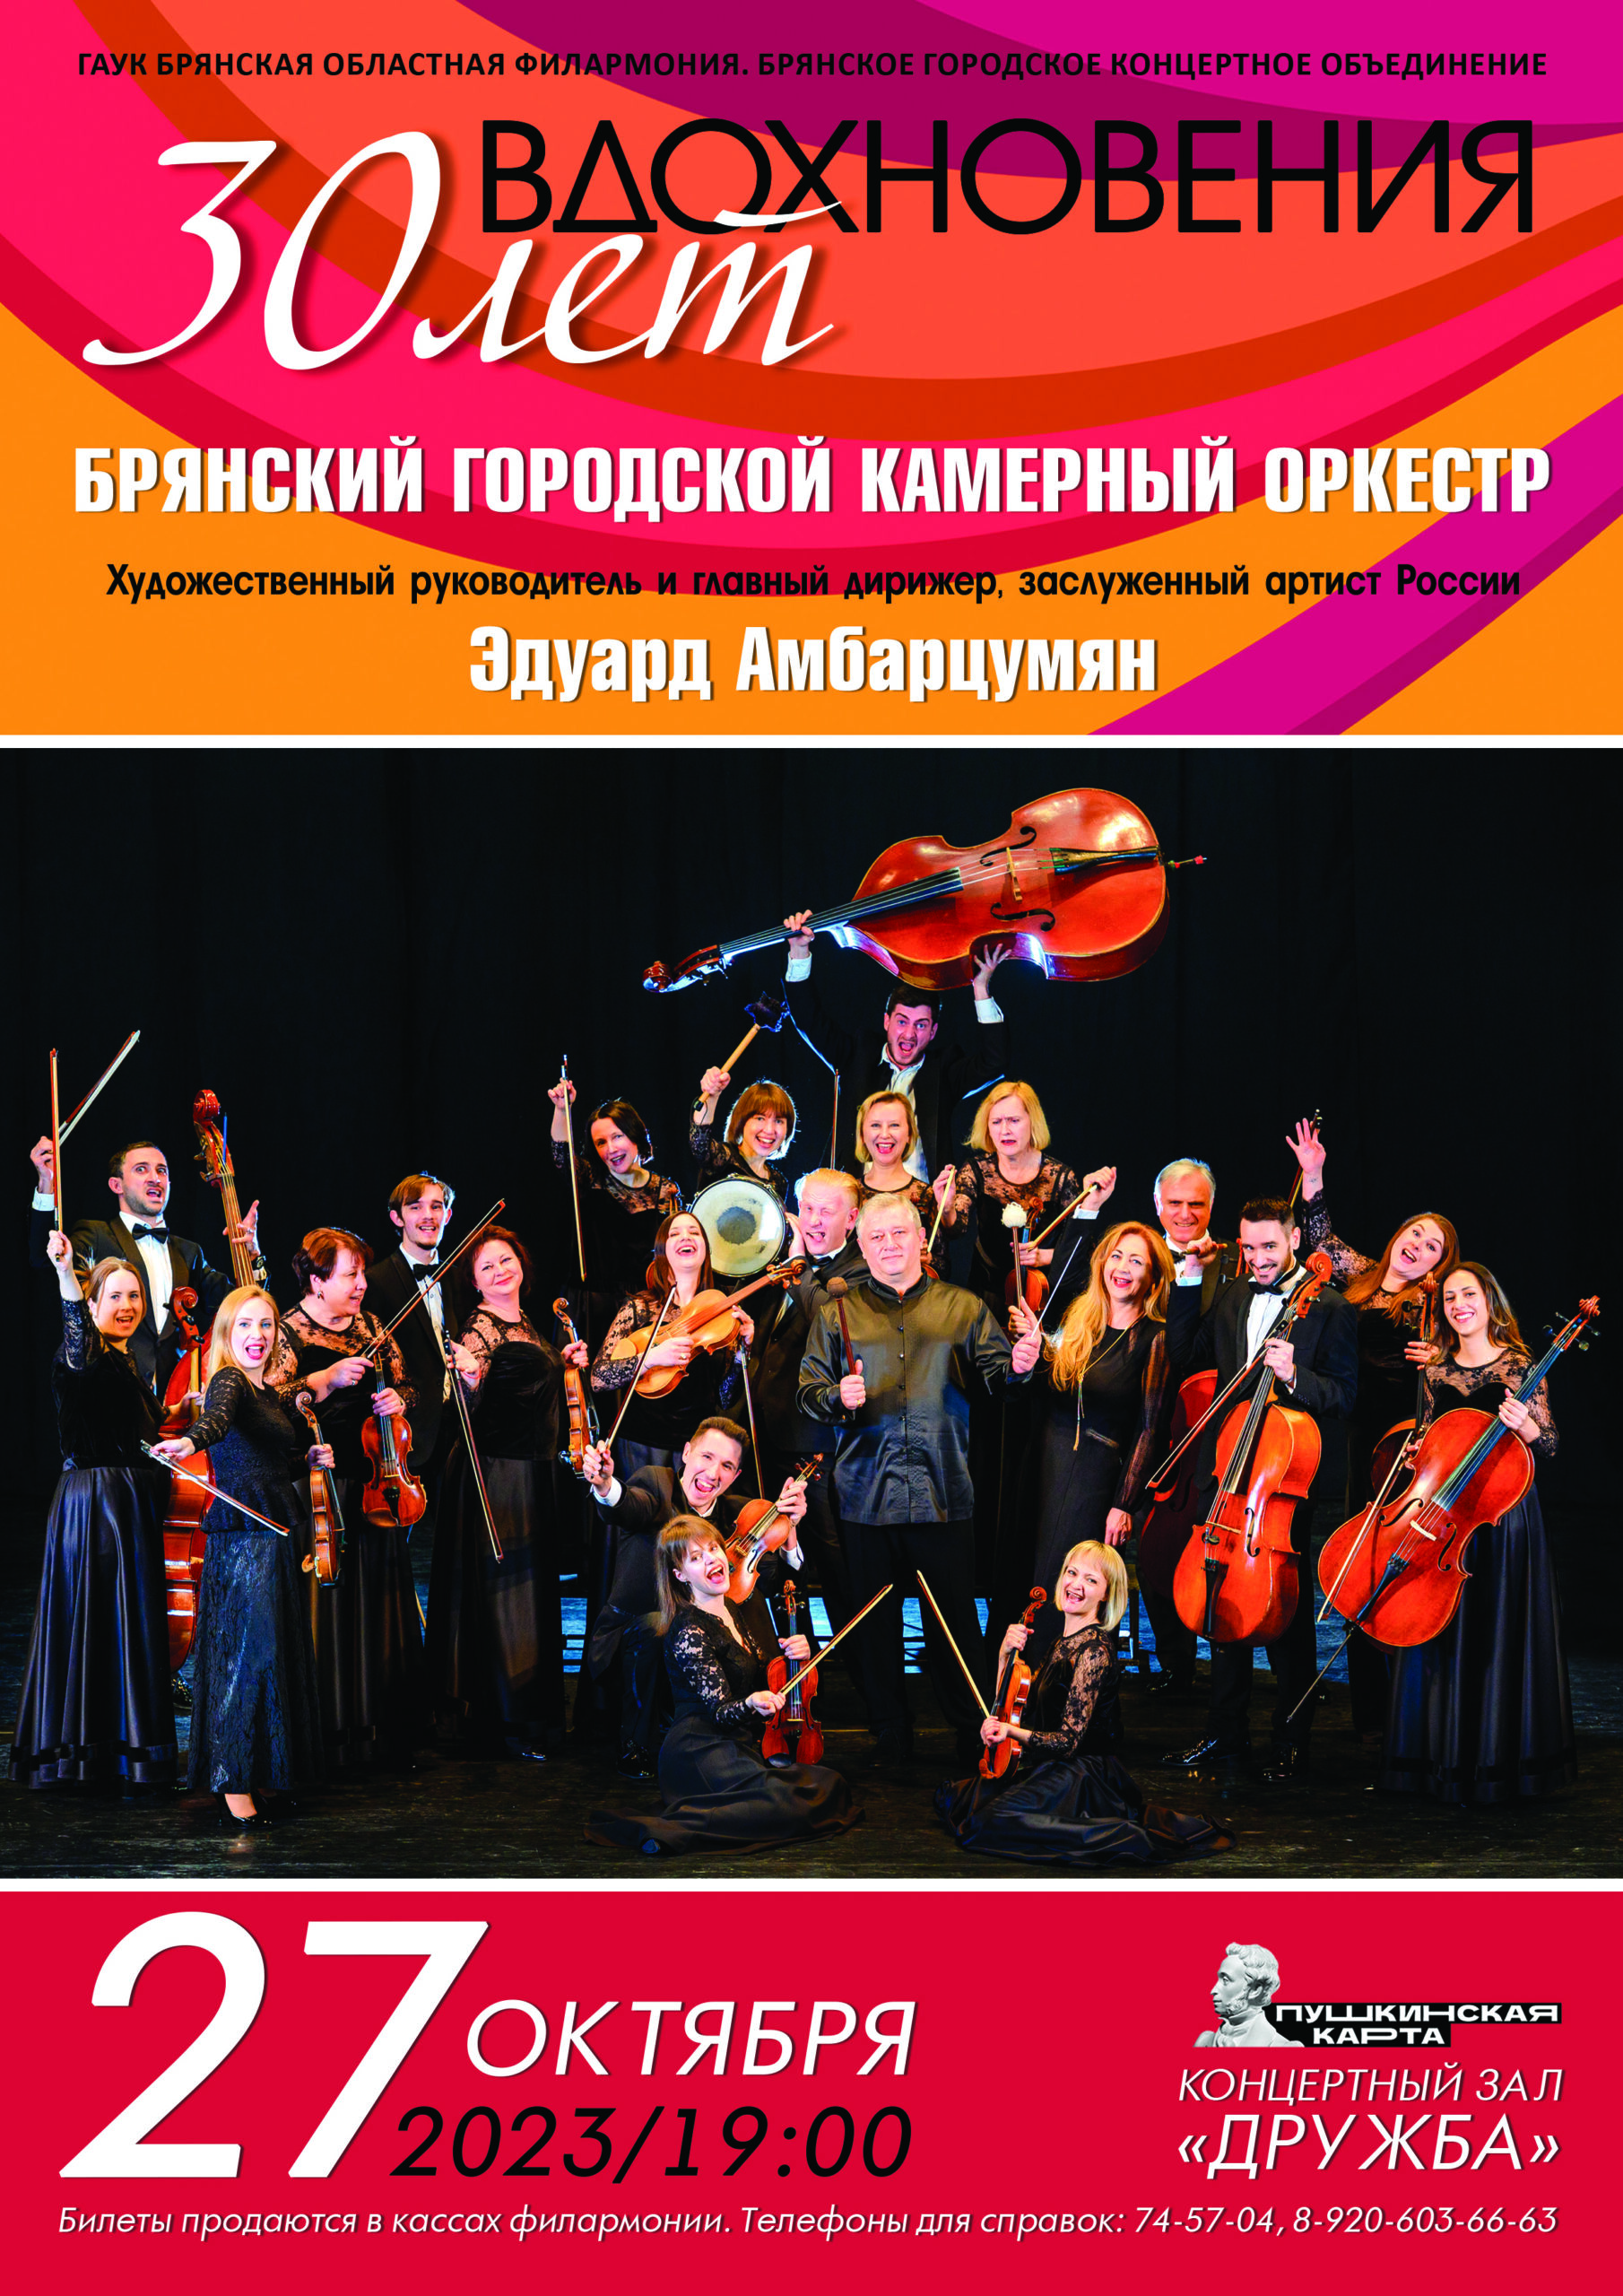 Брянский городской камерный оркестр даст юбилейный концерт в честь своего 30-летия